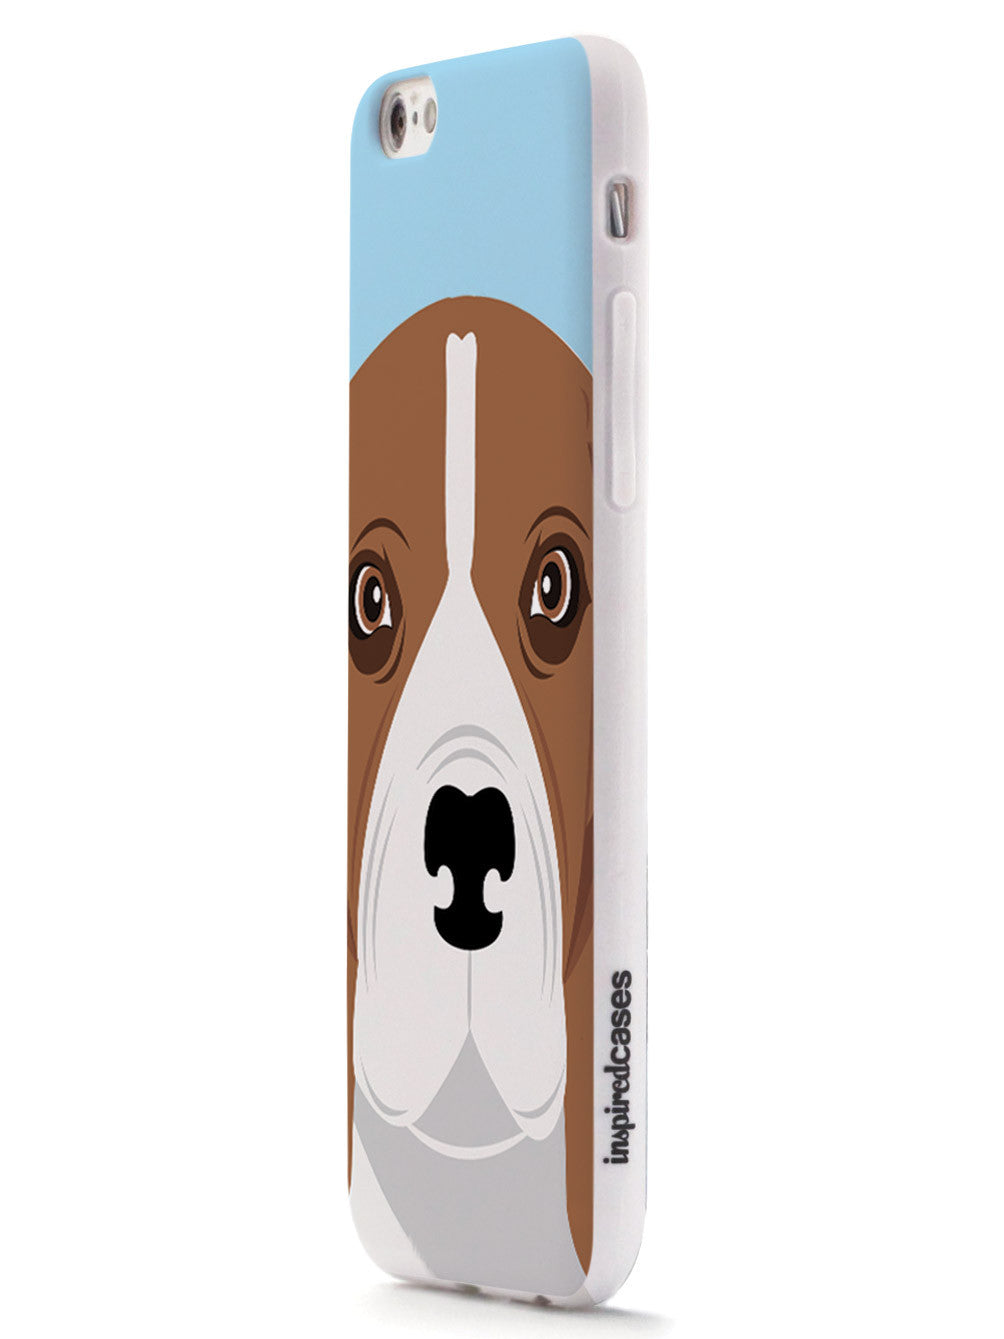 Beagle Face - Dog Case